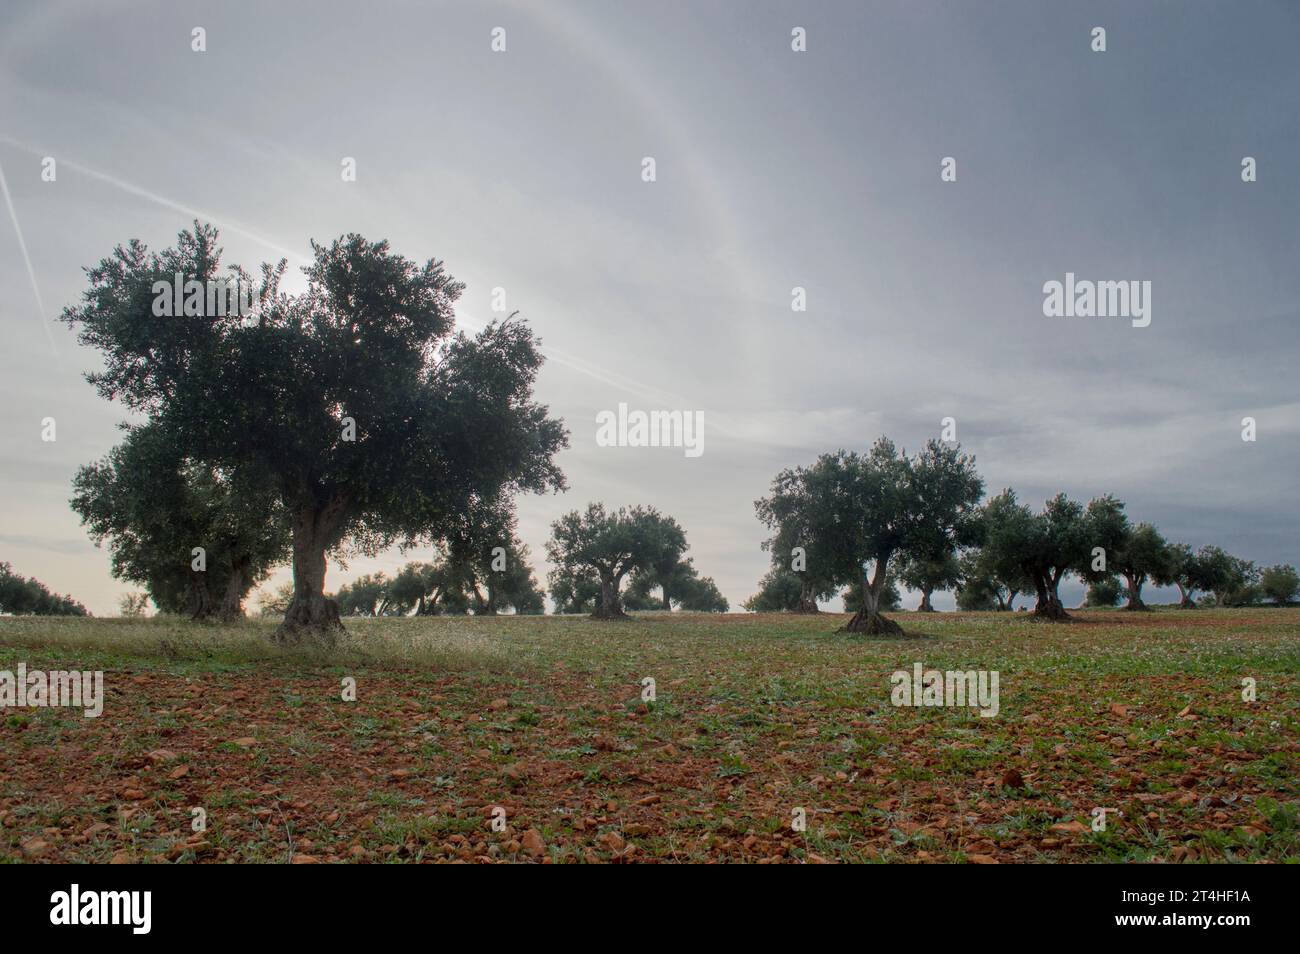 Amanecer en olivar mediterráneo Stock Photo